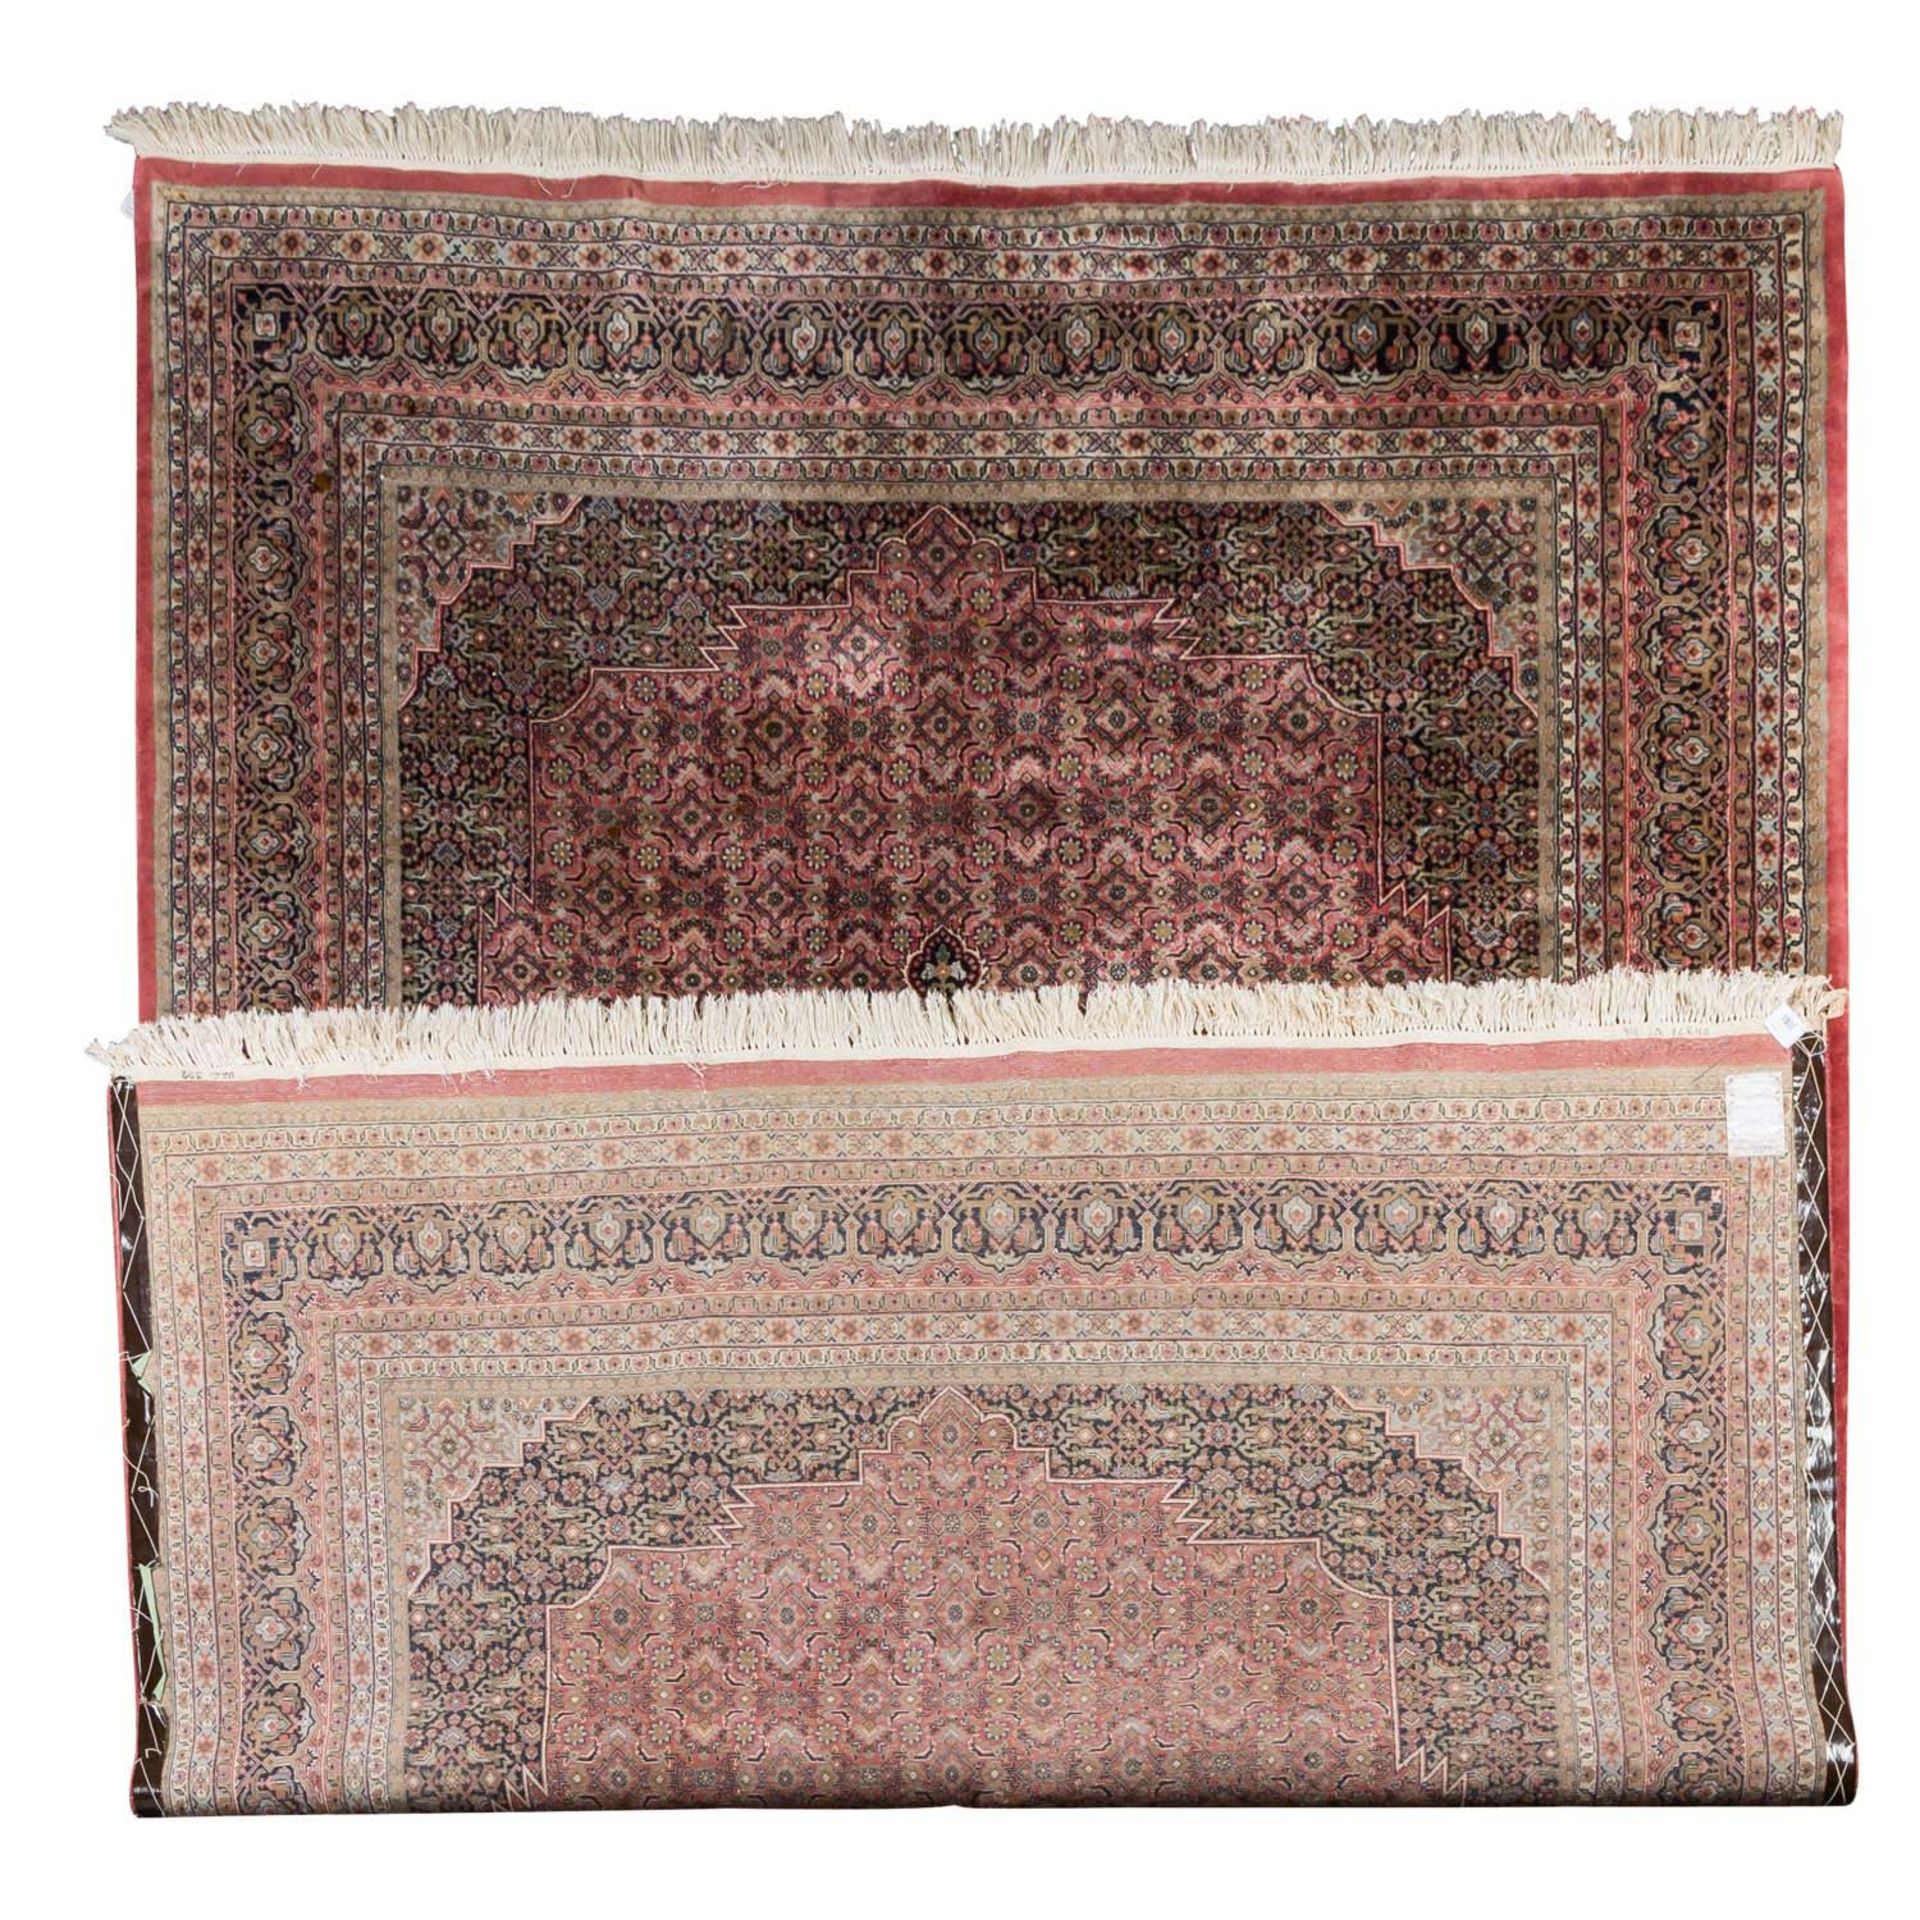 Orientteppich. 'BIDJAR'/INDIEN, 20. Jh., ca. 350x253 cm. - Bild 2 aus 3